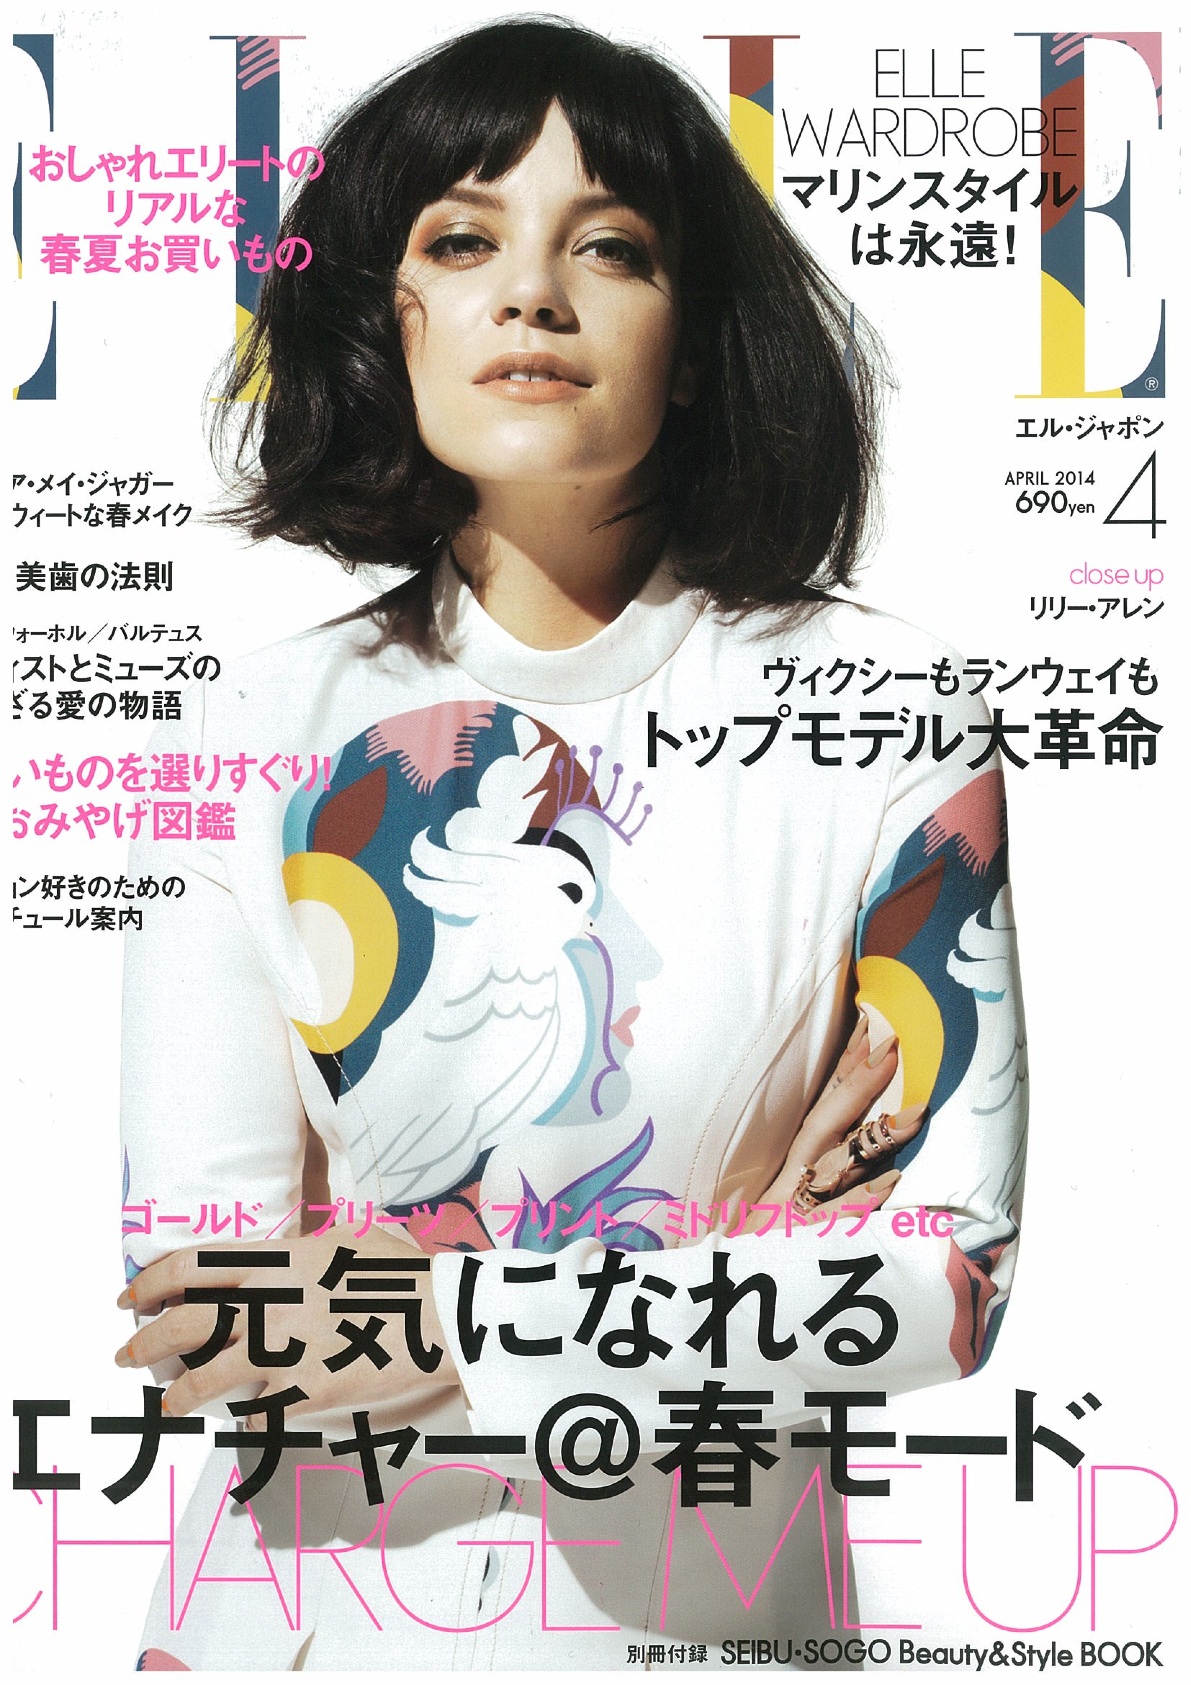 ELLE japan april 2014 cover_